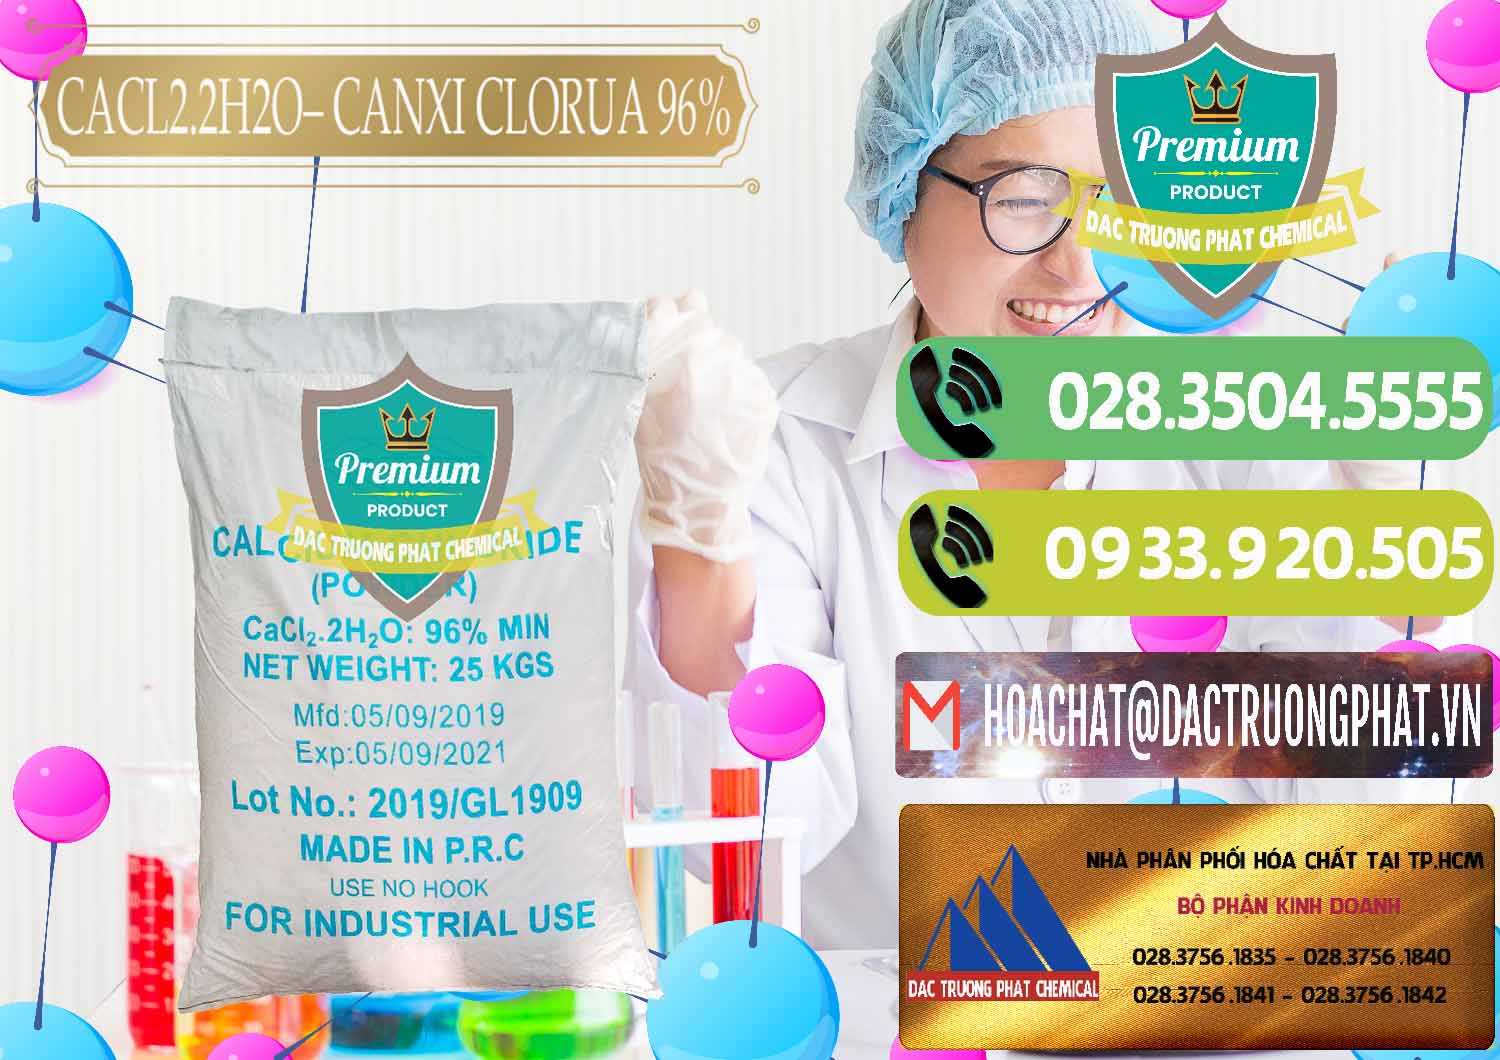 Cty bán _ cung ứng CaCl2 – Canxi Clorua 96% Logo Kim Cương Trung Quốc China - 0040 - Chuyên cung cấp _ phân phối hóa chất tại TP.HCM - hoachatmientay.vn